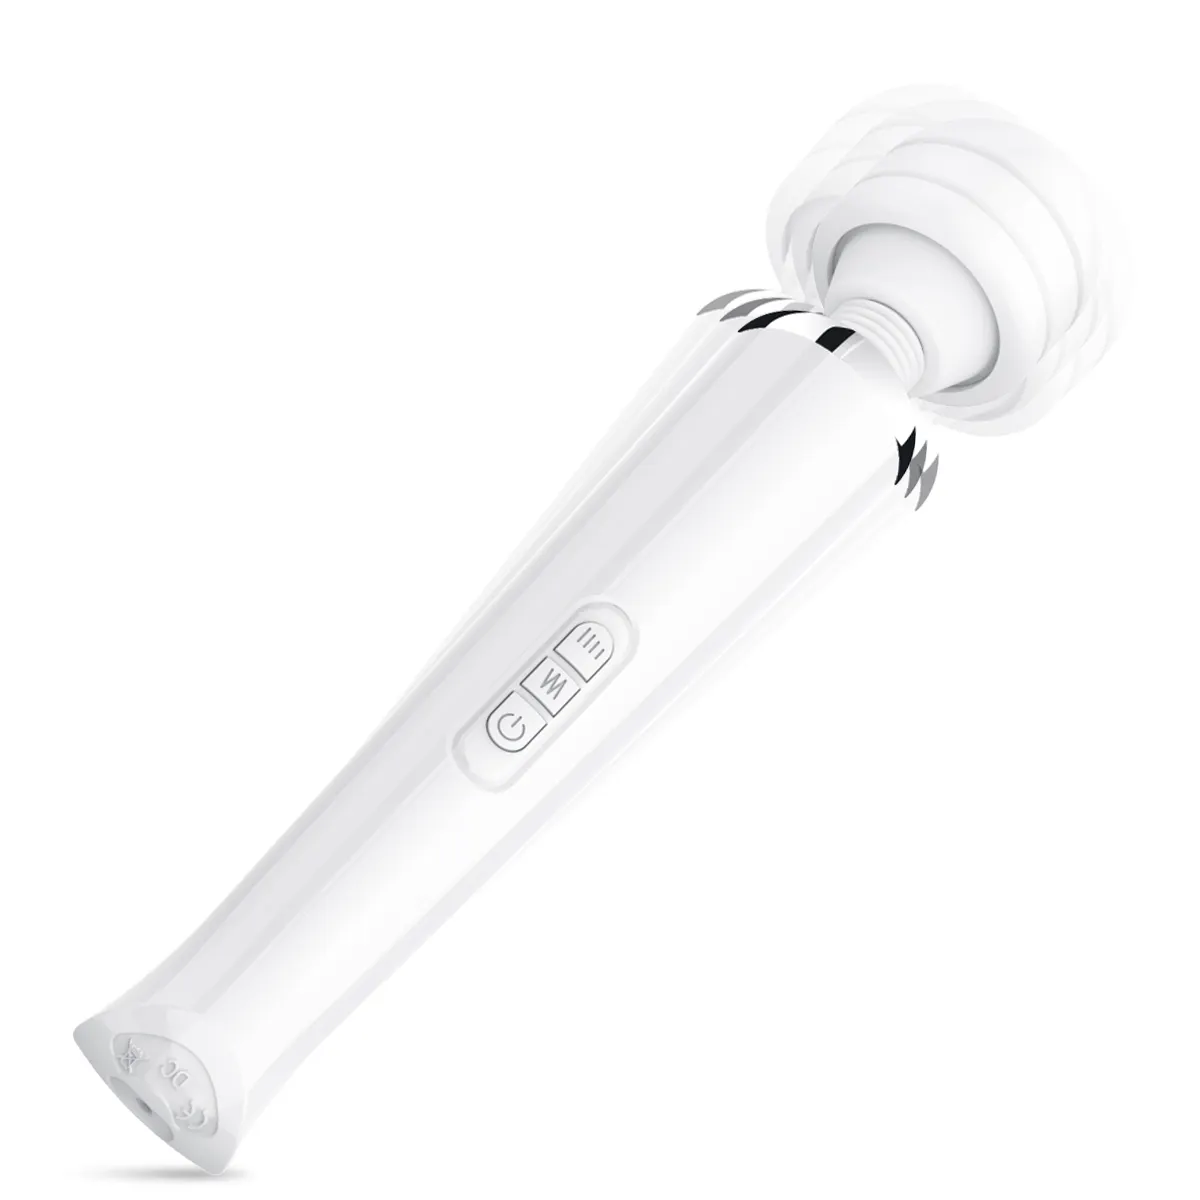 Magic AV Stick Vibrator Silikon-Masturbationshilfe für Frauen stimuliert Orgasmus Klitoris-Sex Lieferant Hersteller für Sexspielzeug